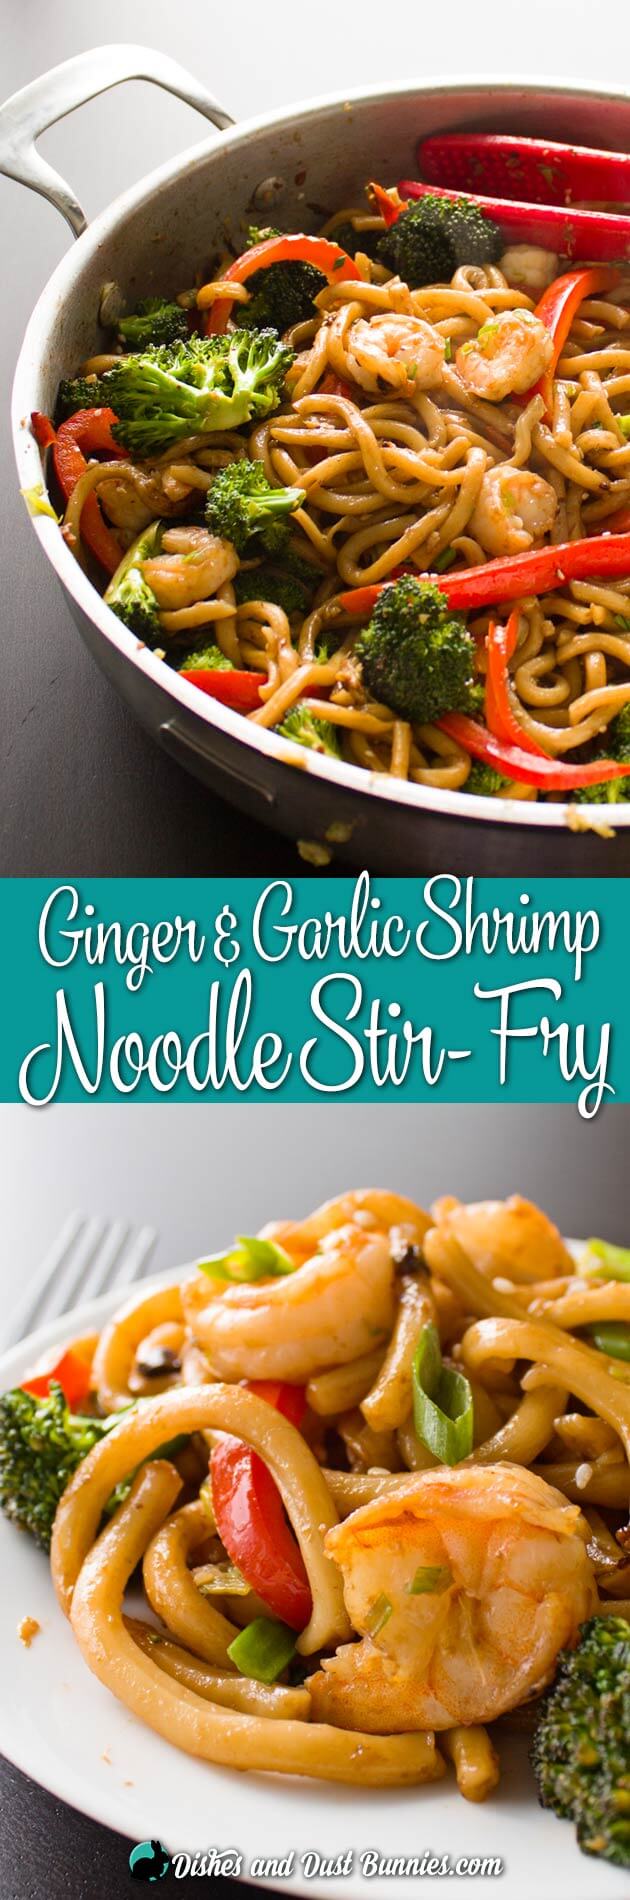 Ginger Garlic Shrimp Noodle Stir Fry from dishesanddustbunnies.com